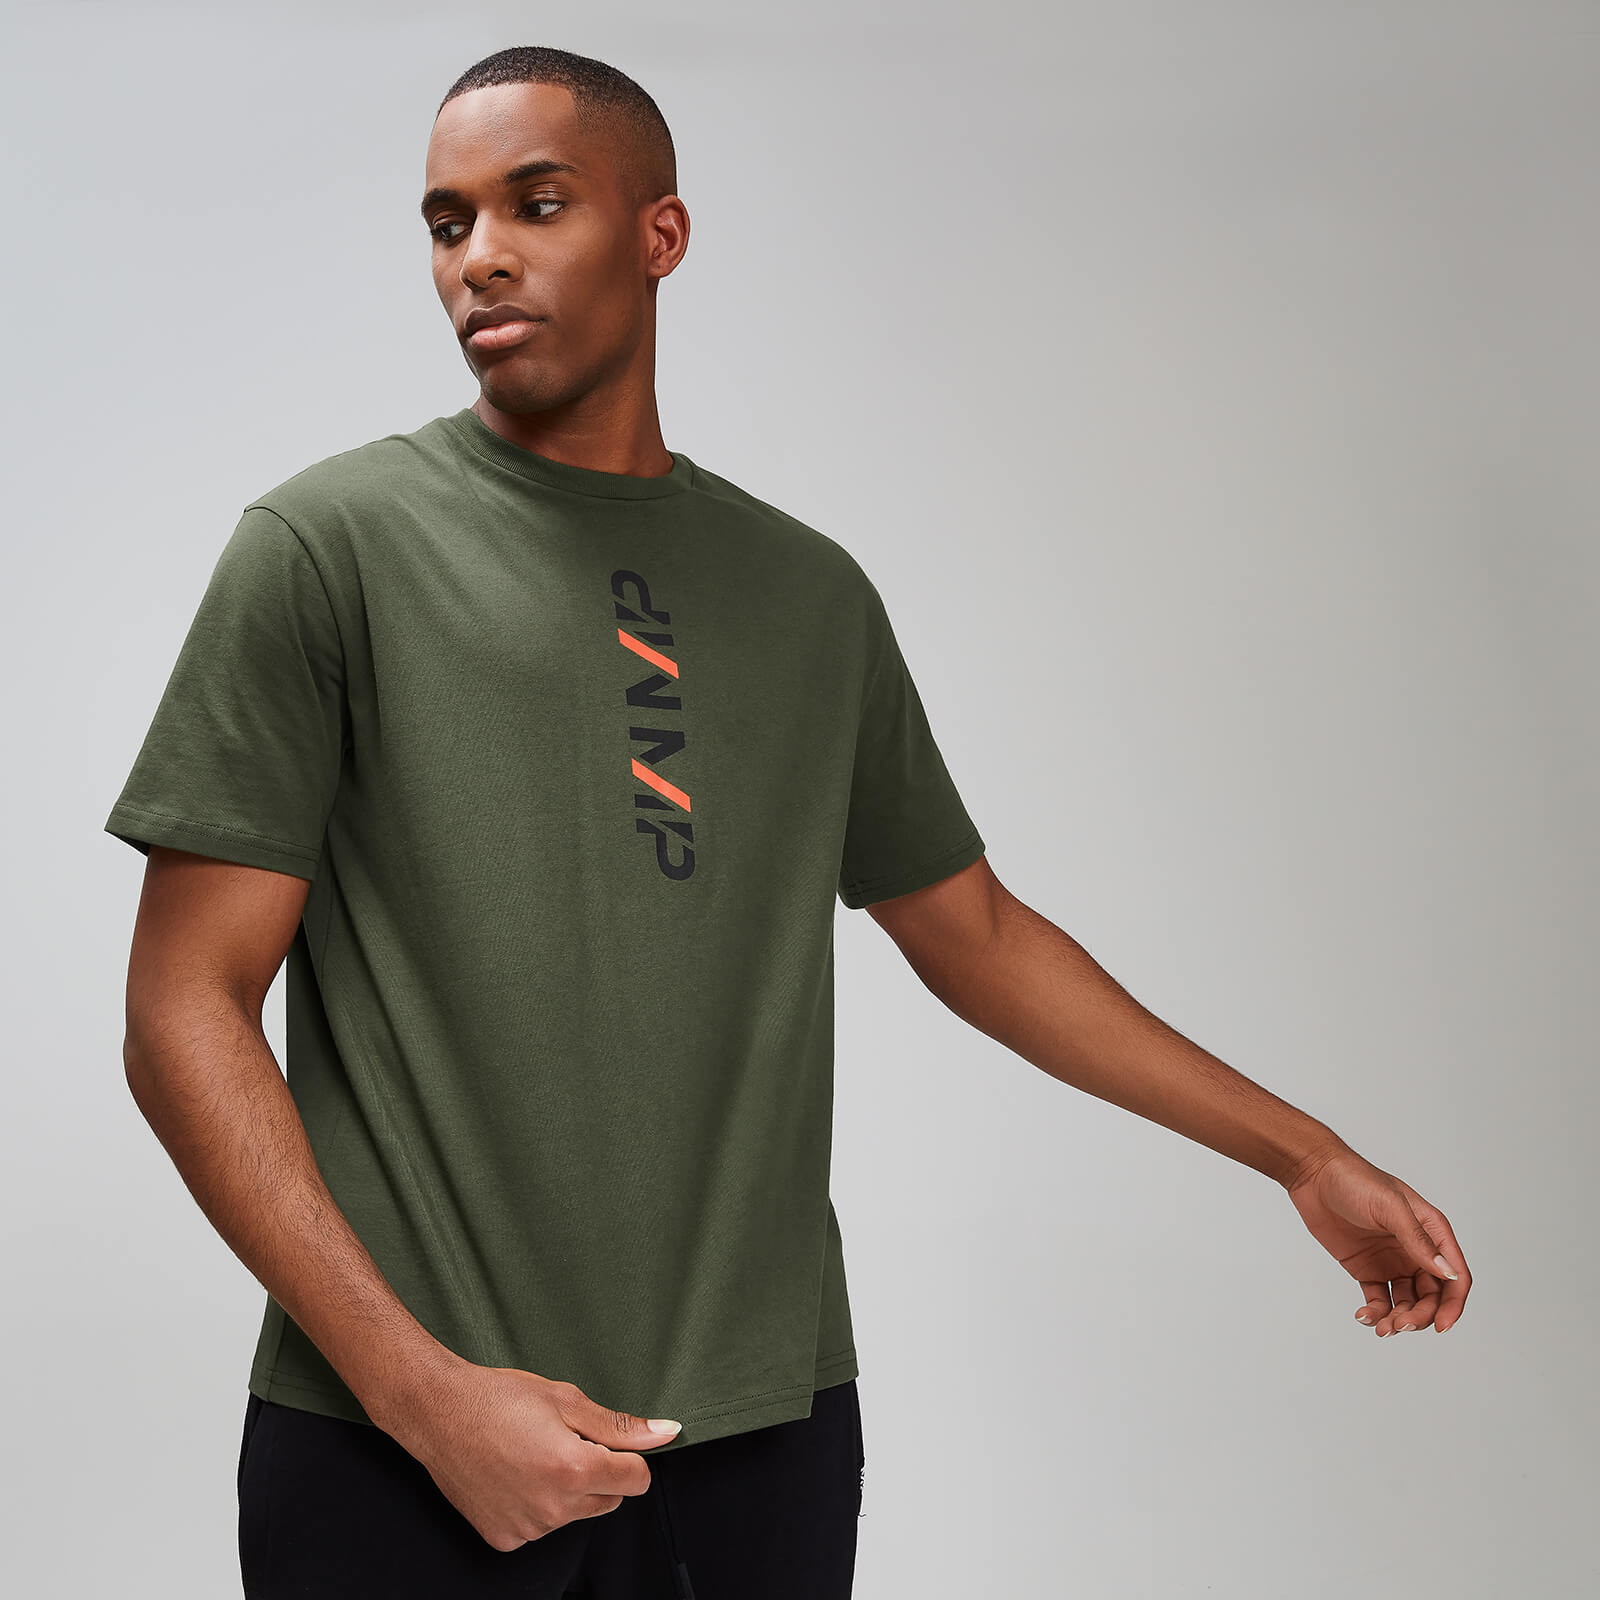 T-shirt graphique Rest Day Homme - Vert armée